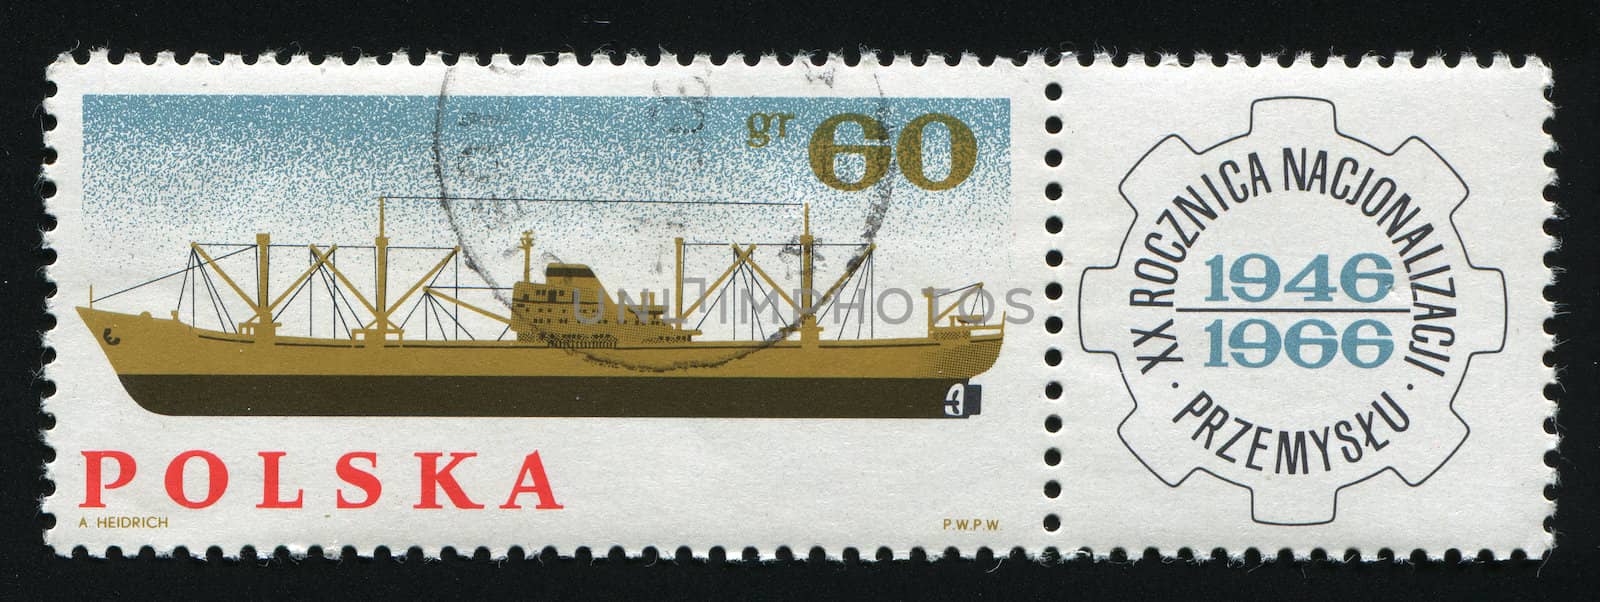 POLAND -CIRCA 1966: Supervising Technical Organization emblem. Cargo Ship, circa 1966.